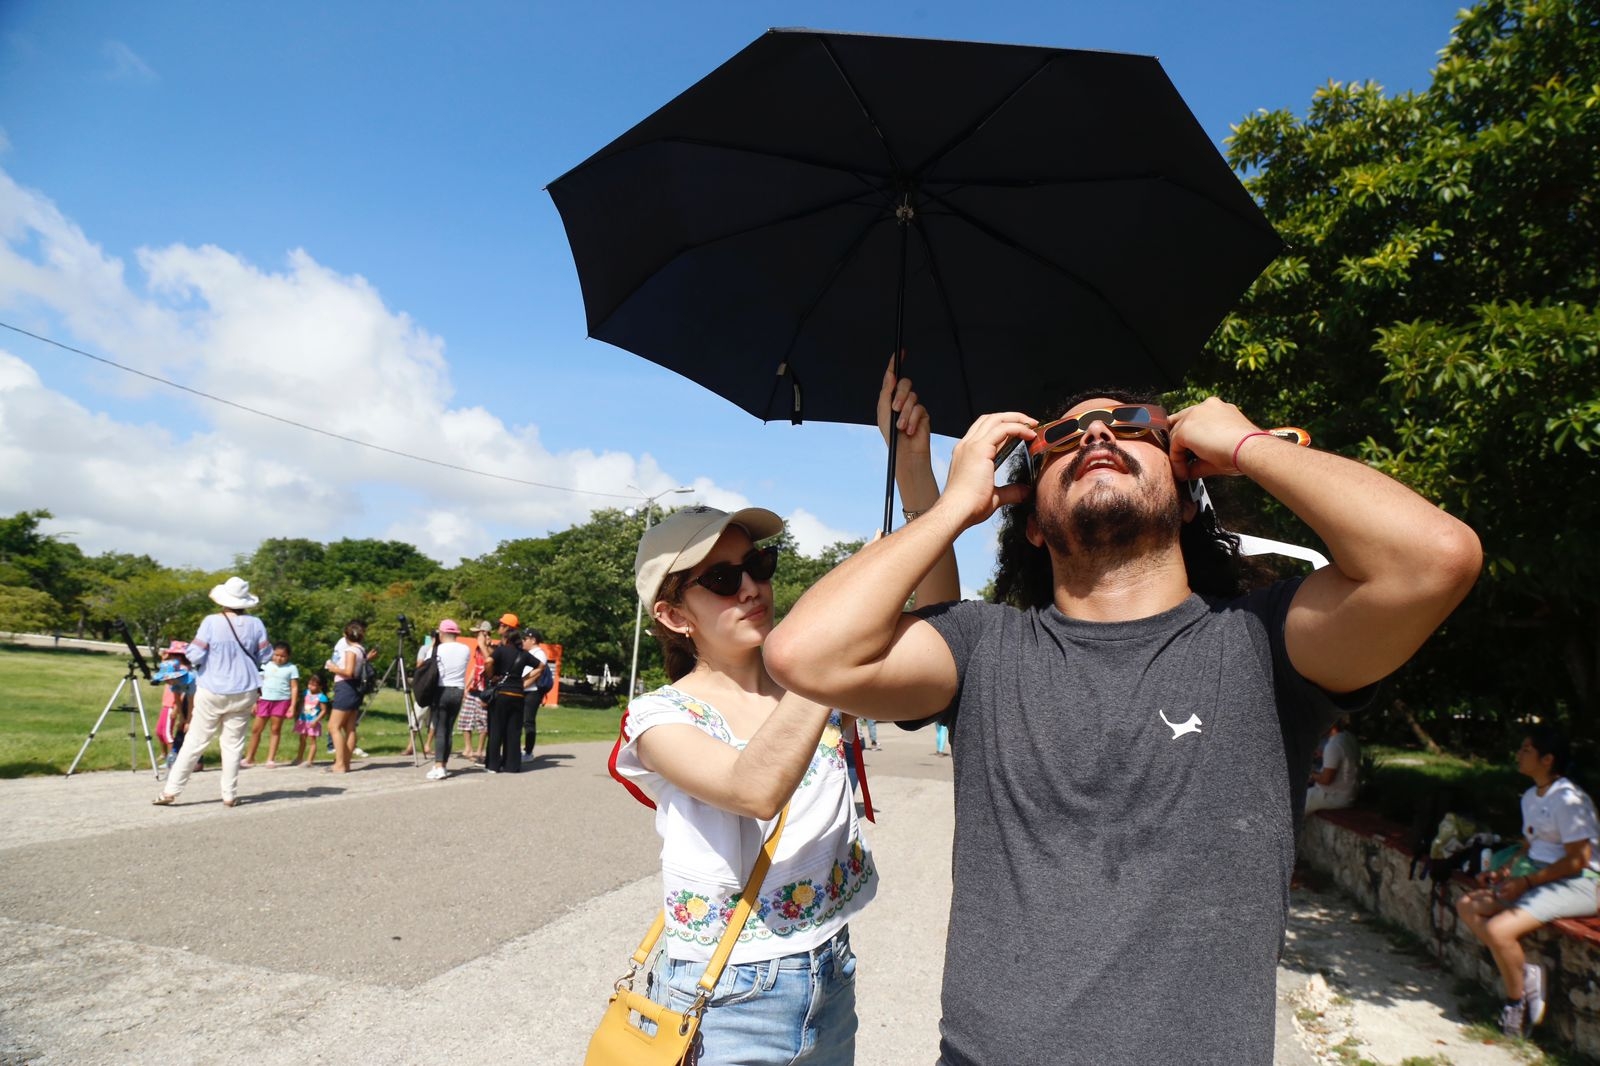 Cientos de personas atestiguarán el Eclipse solar desde la Península de Yucatán